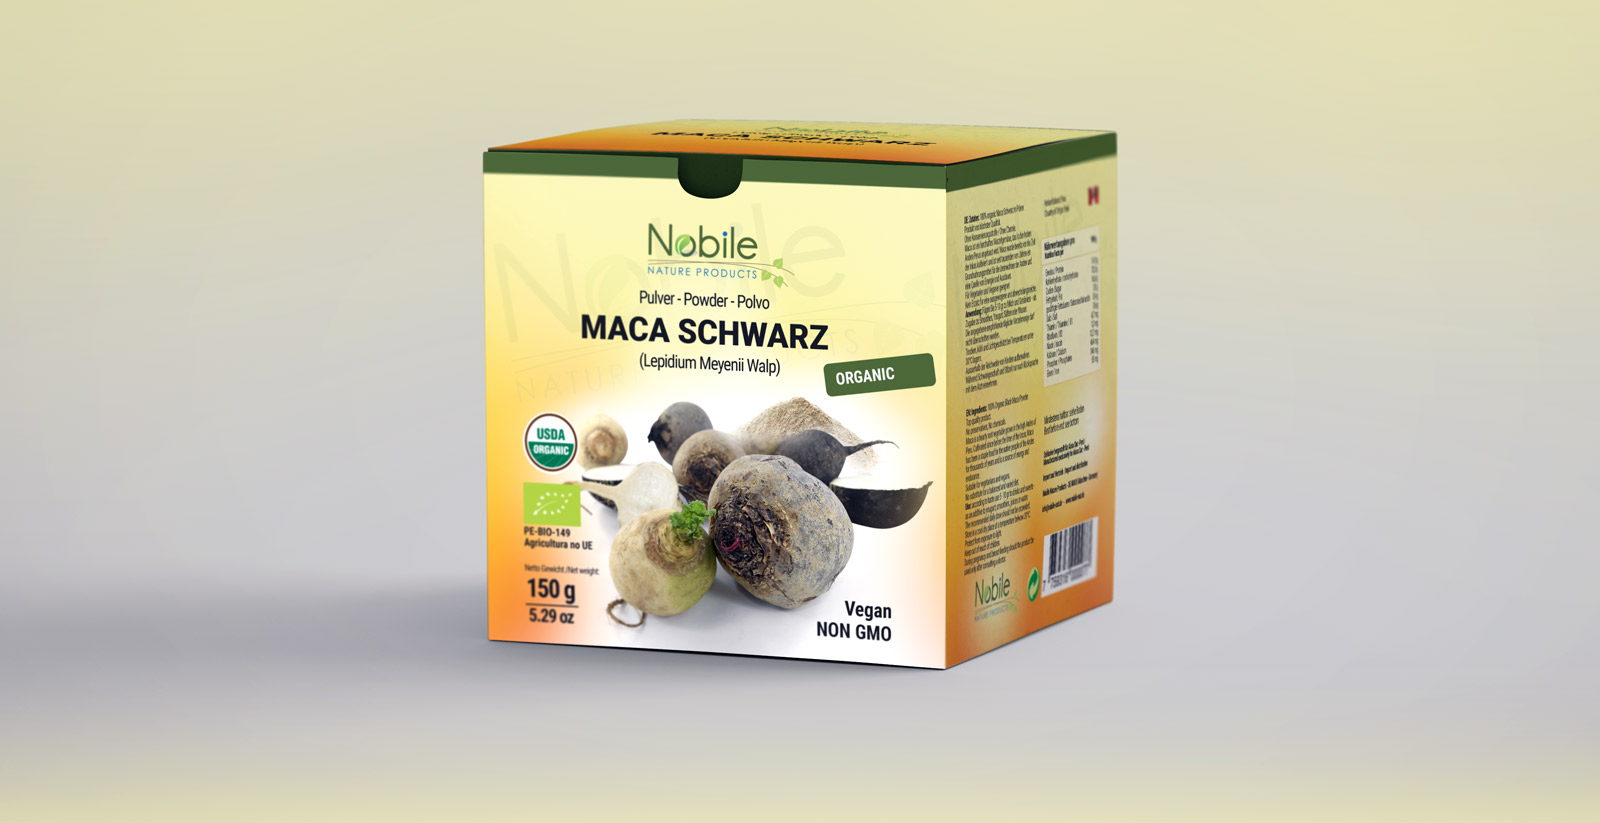 Diseño gráfico y creativo de etiquetas y packaging para MACA NEGRA de Nobile Nature Products en Alemania